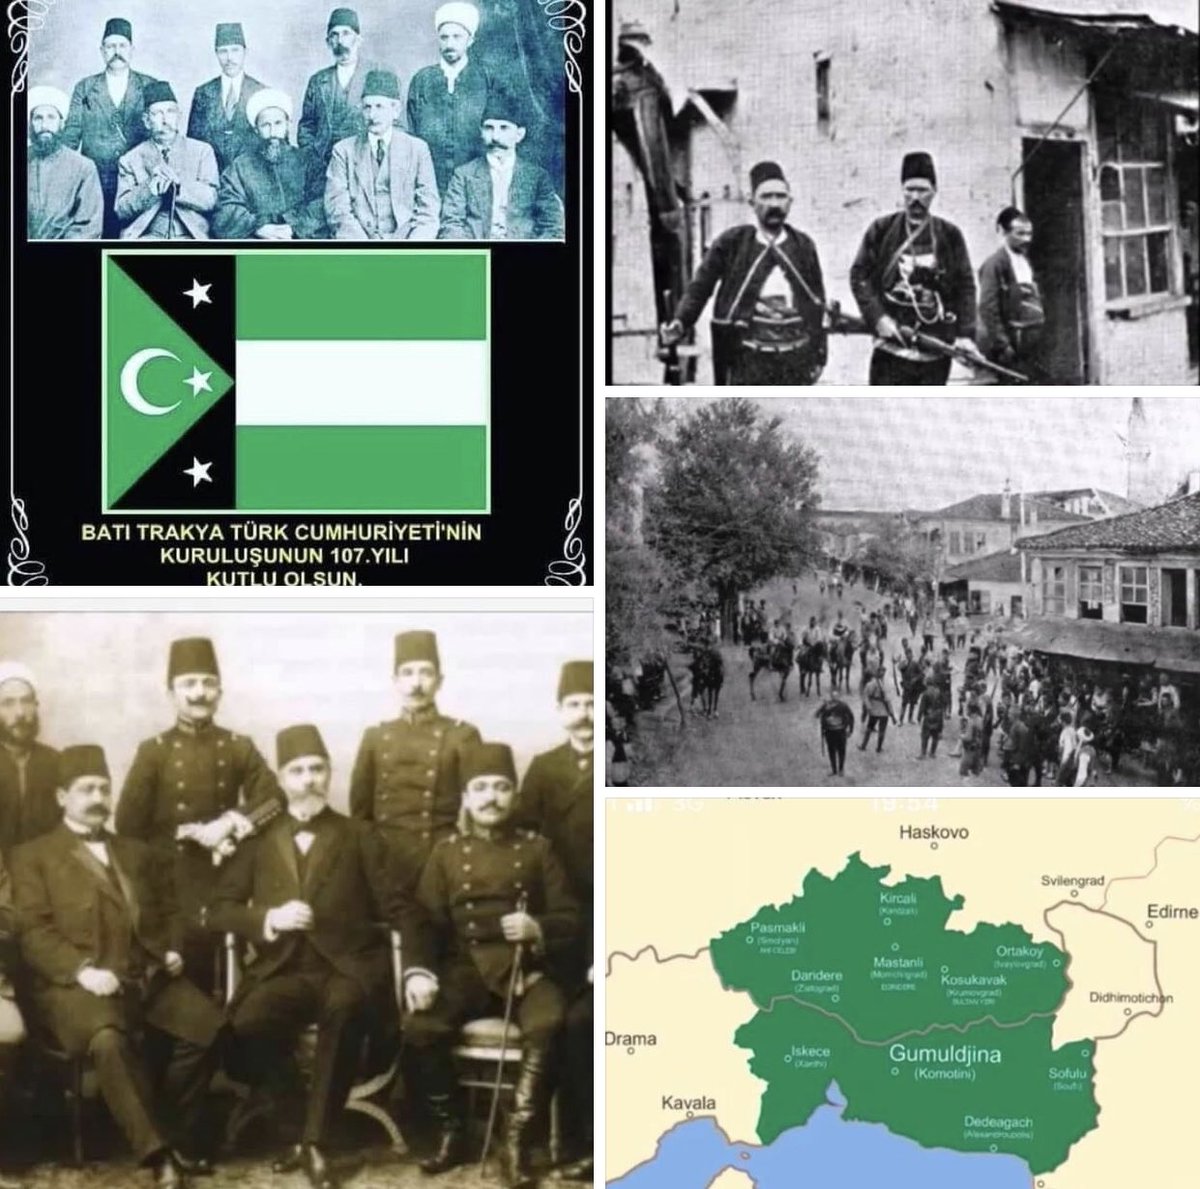 31 Ağustos 1913’te kurulan ilkTürk Cumhuriyeti olan Batı Trakya Bağımsız Hükümetinin (Garbi Trakya Hükümet-i müstakilesinin) 110. yılı kutlu olsun.